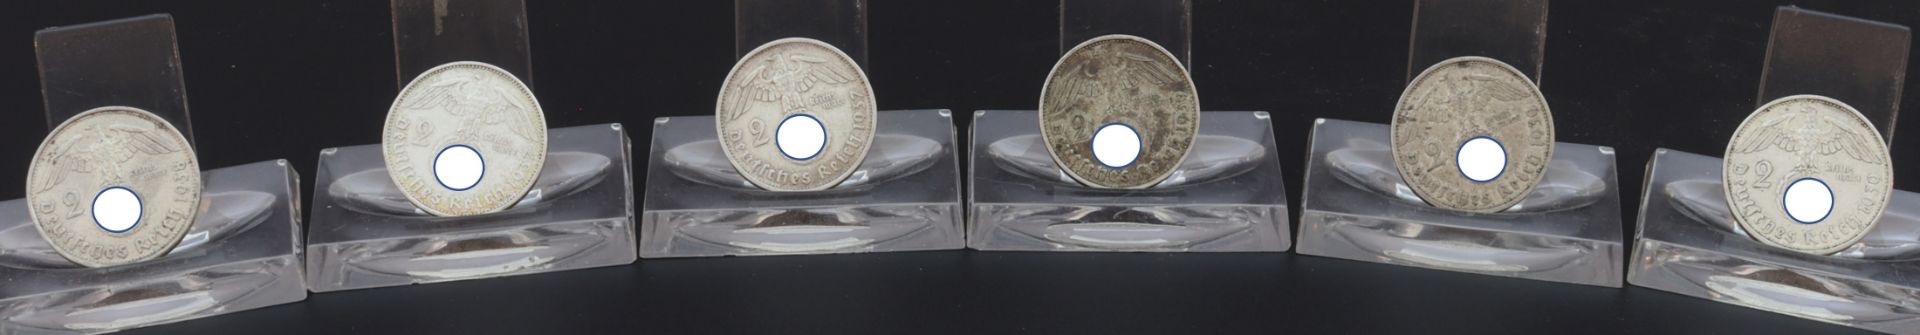 2 Reichsmark Münzen x 5 Stück, Deutsches Reich 1937-1939 - Image 2 of 2